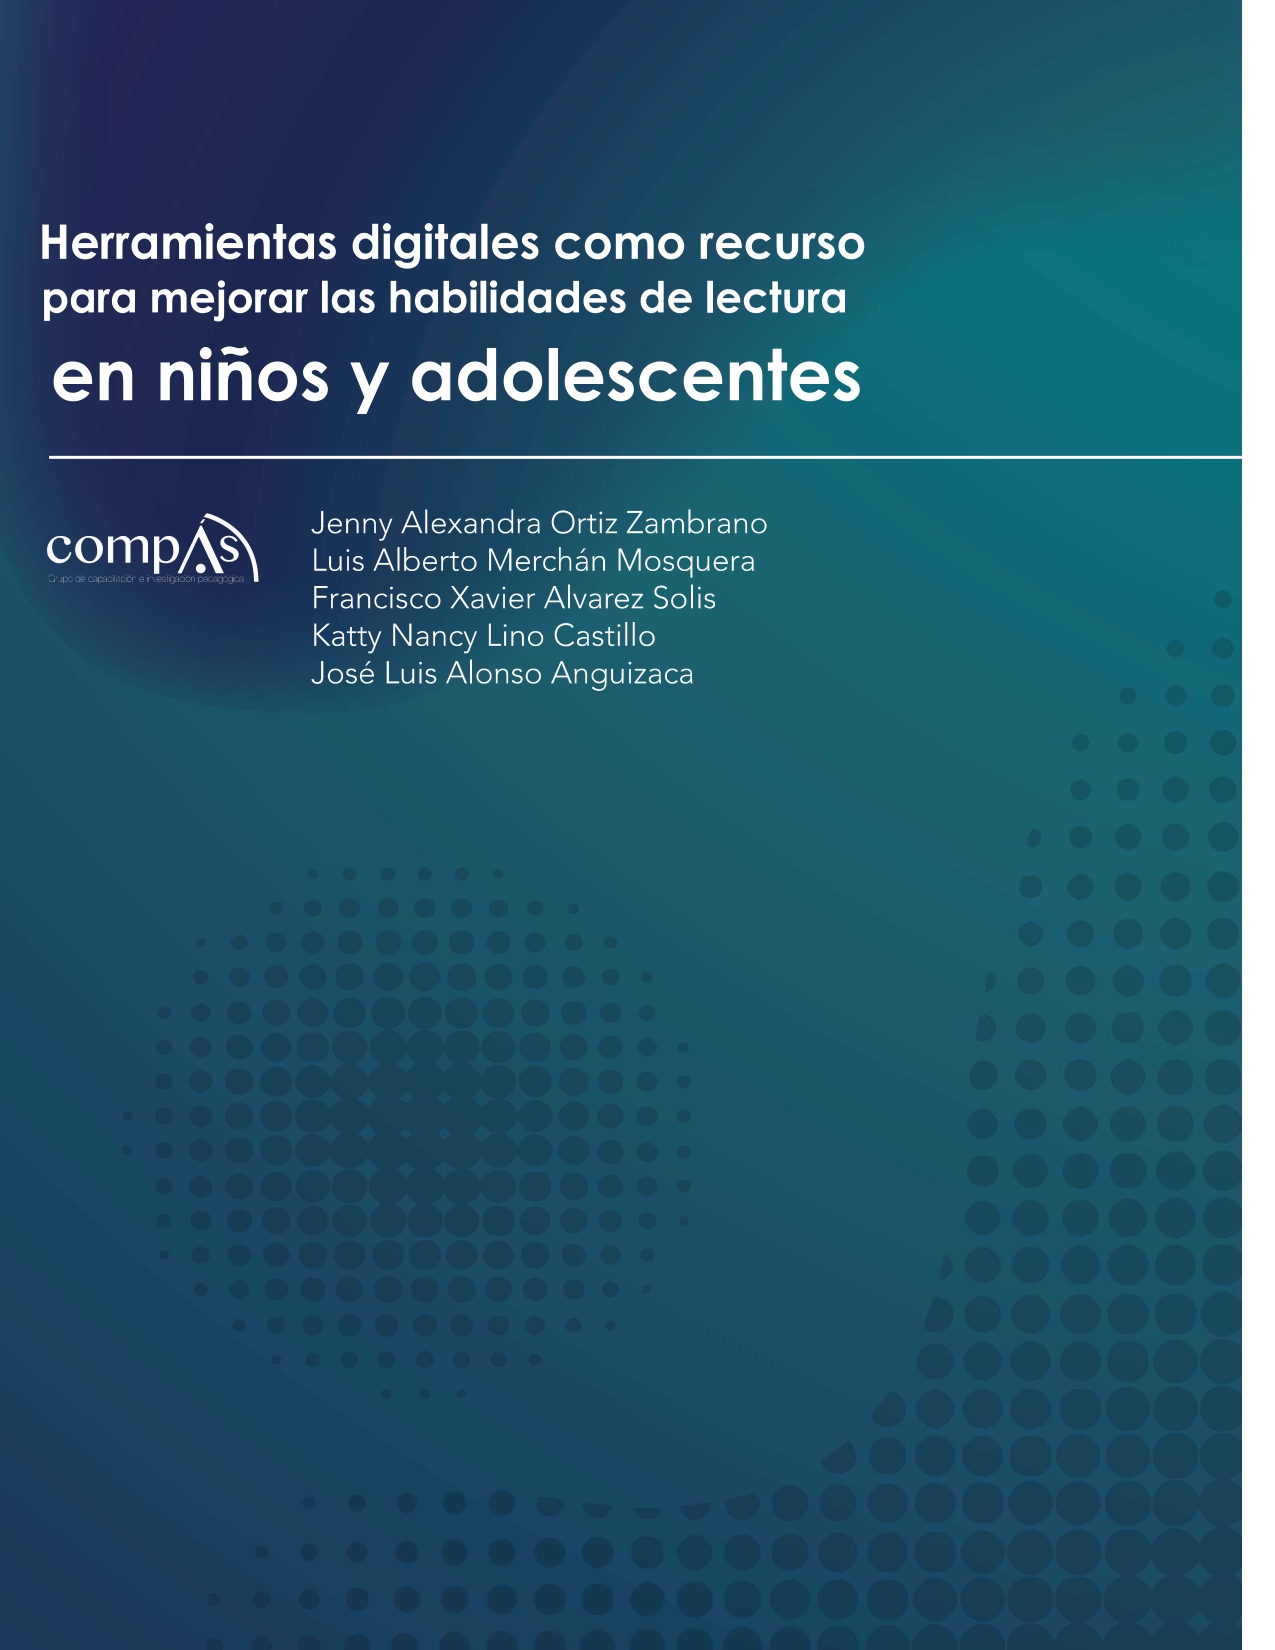 Imagen de portada del libro Herramientas digitales como recurso para mejorar las habilidades de lectura en niños y adolescentes